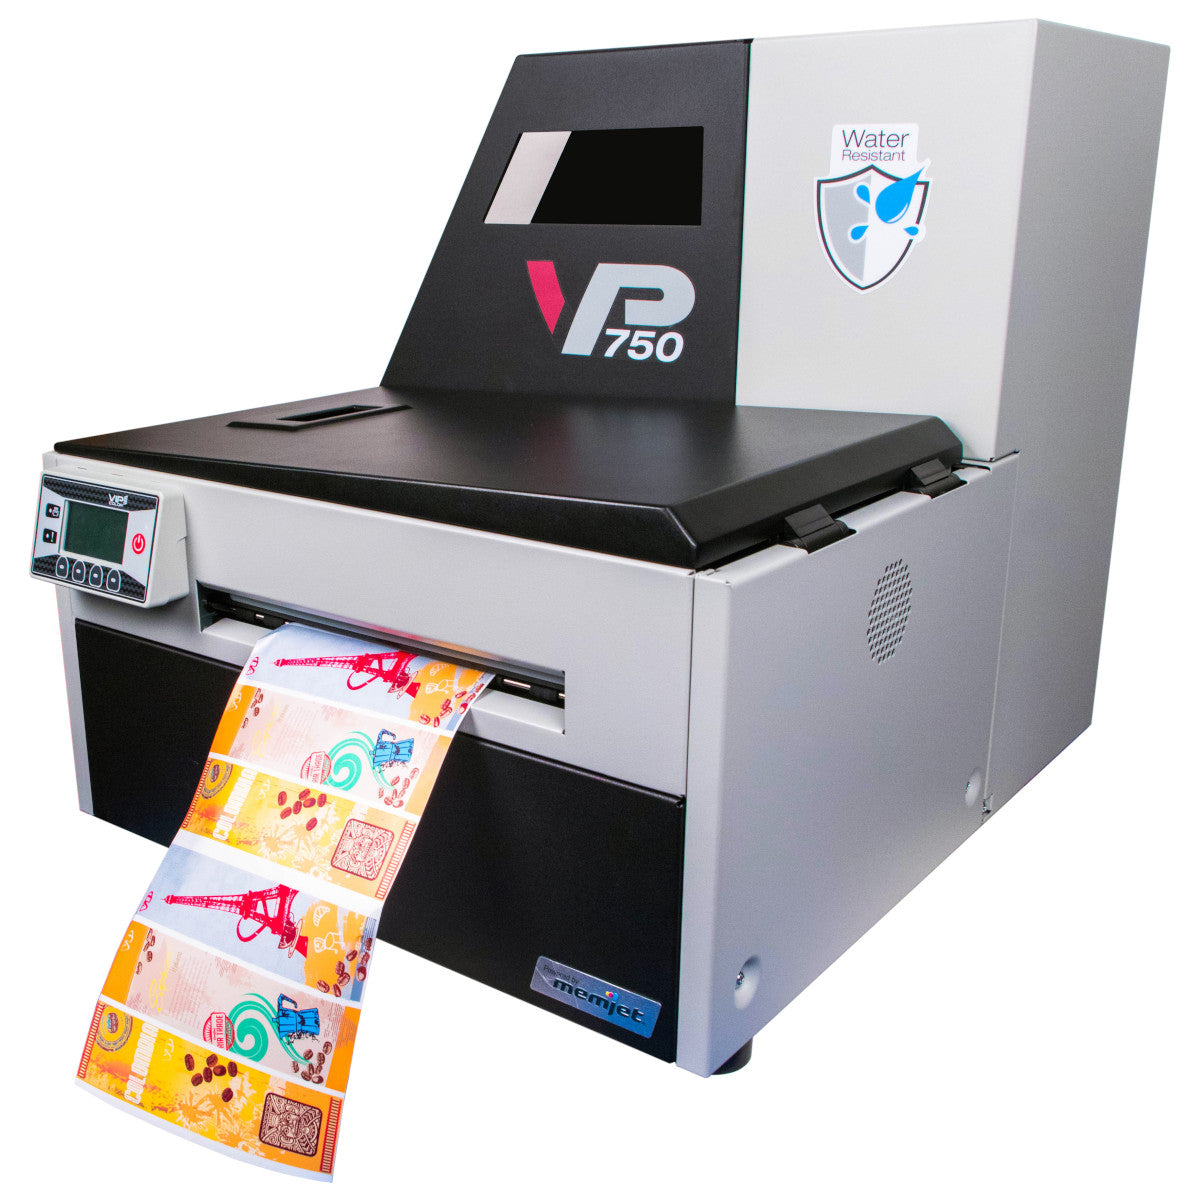 307043 - Stampante per etichette a colori digitale VP750 EU